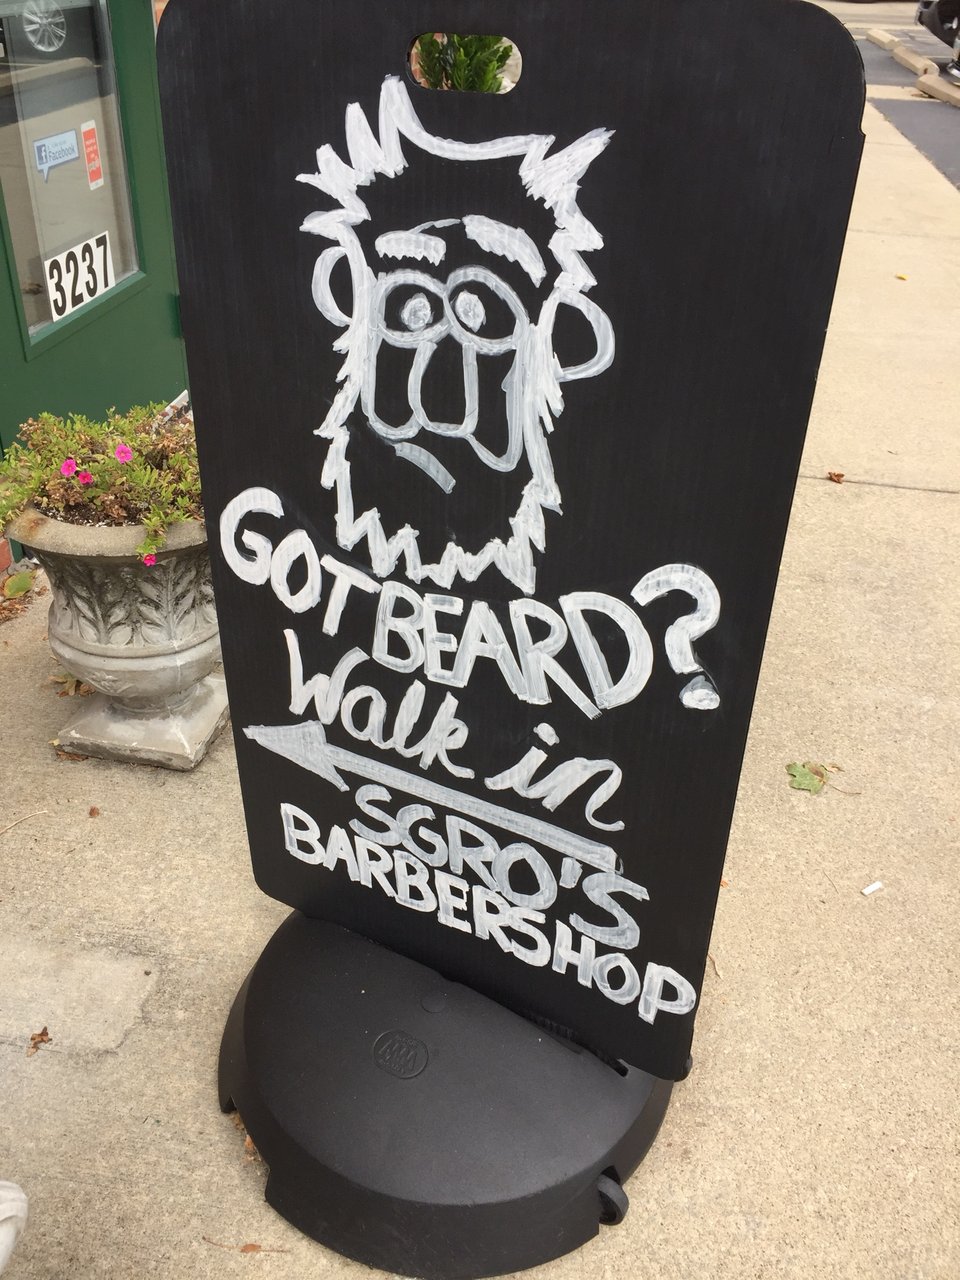 Sgro's Barbershop